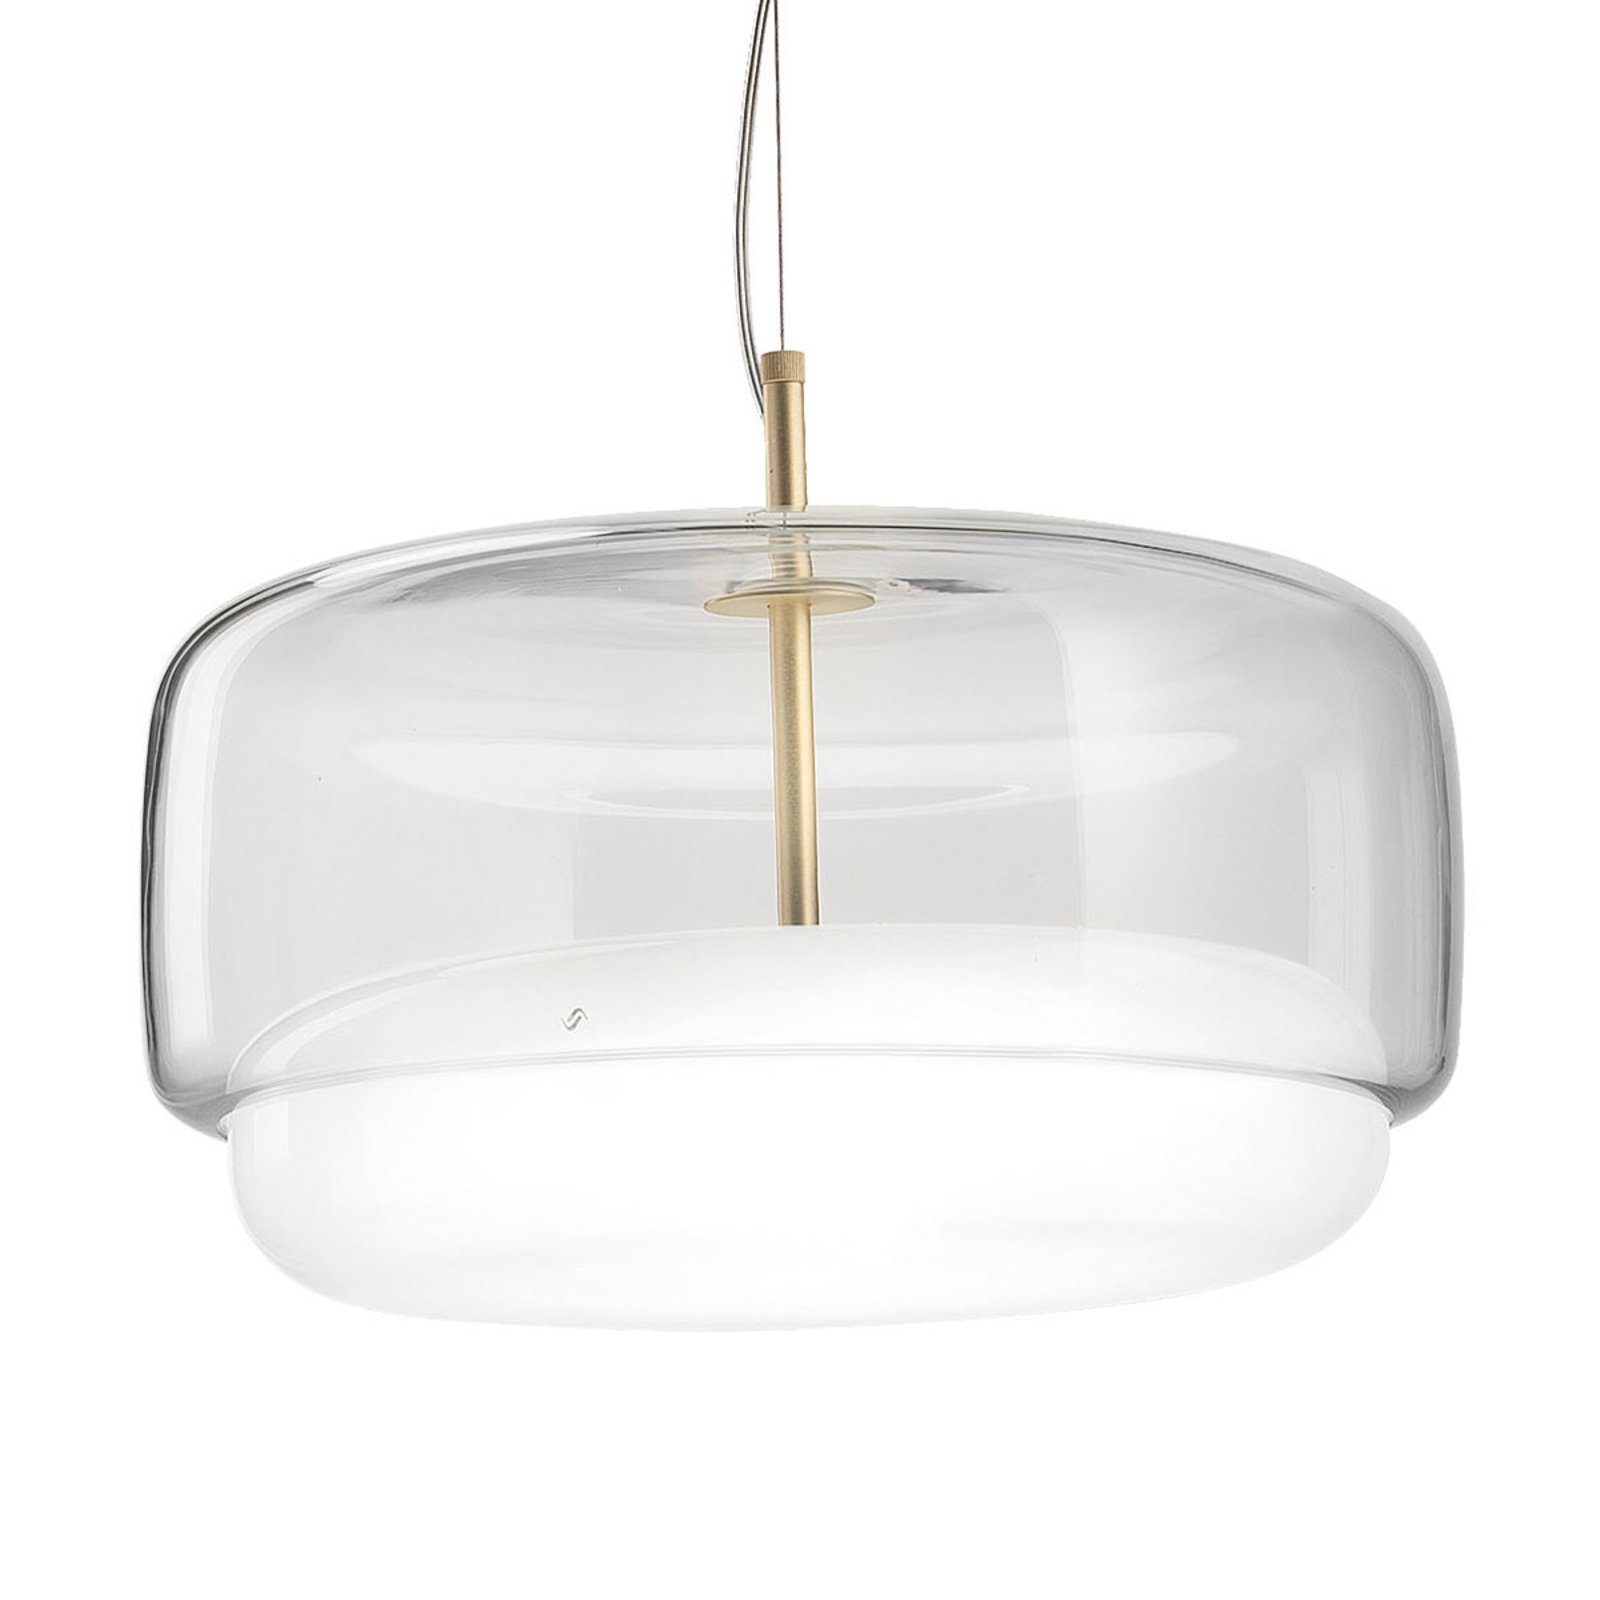 Suspension LED Jube SP G verre, transparent/blanc